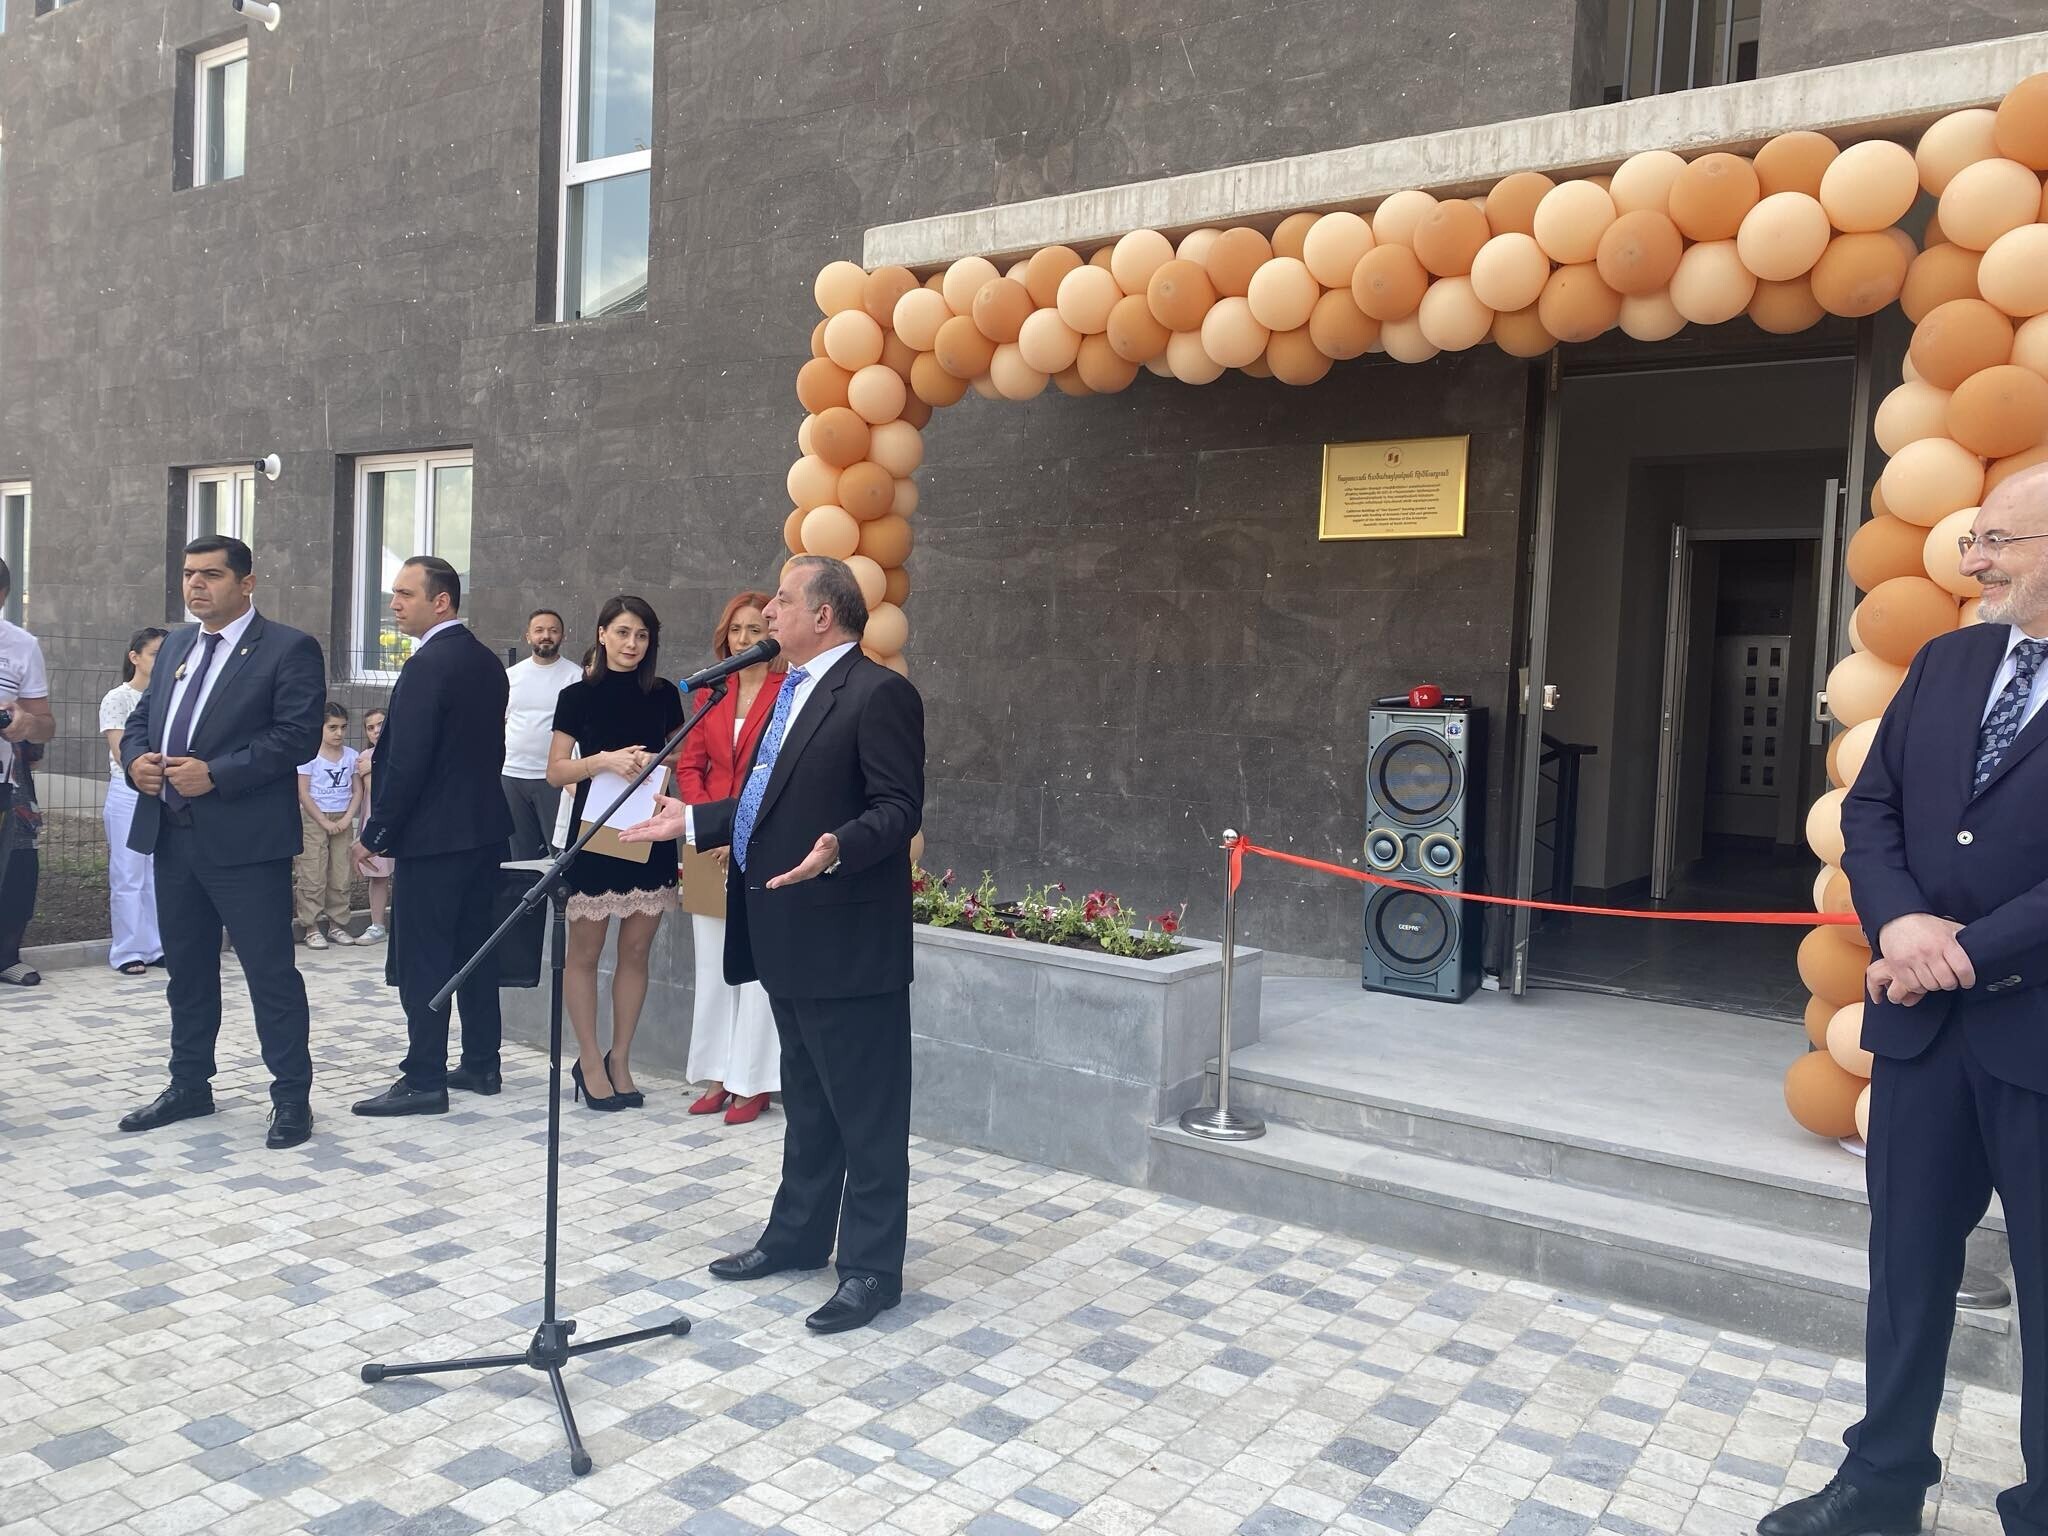 مراسم افتتاحیه و تحویل ساختمان های مسکونی در منطقه "موش-2" شهر گئومری